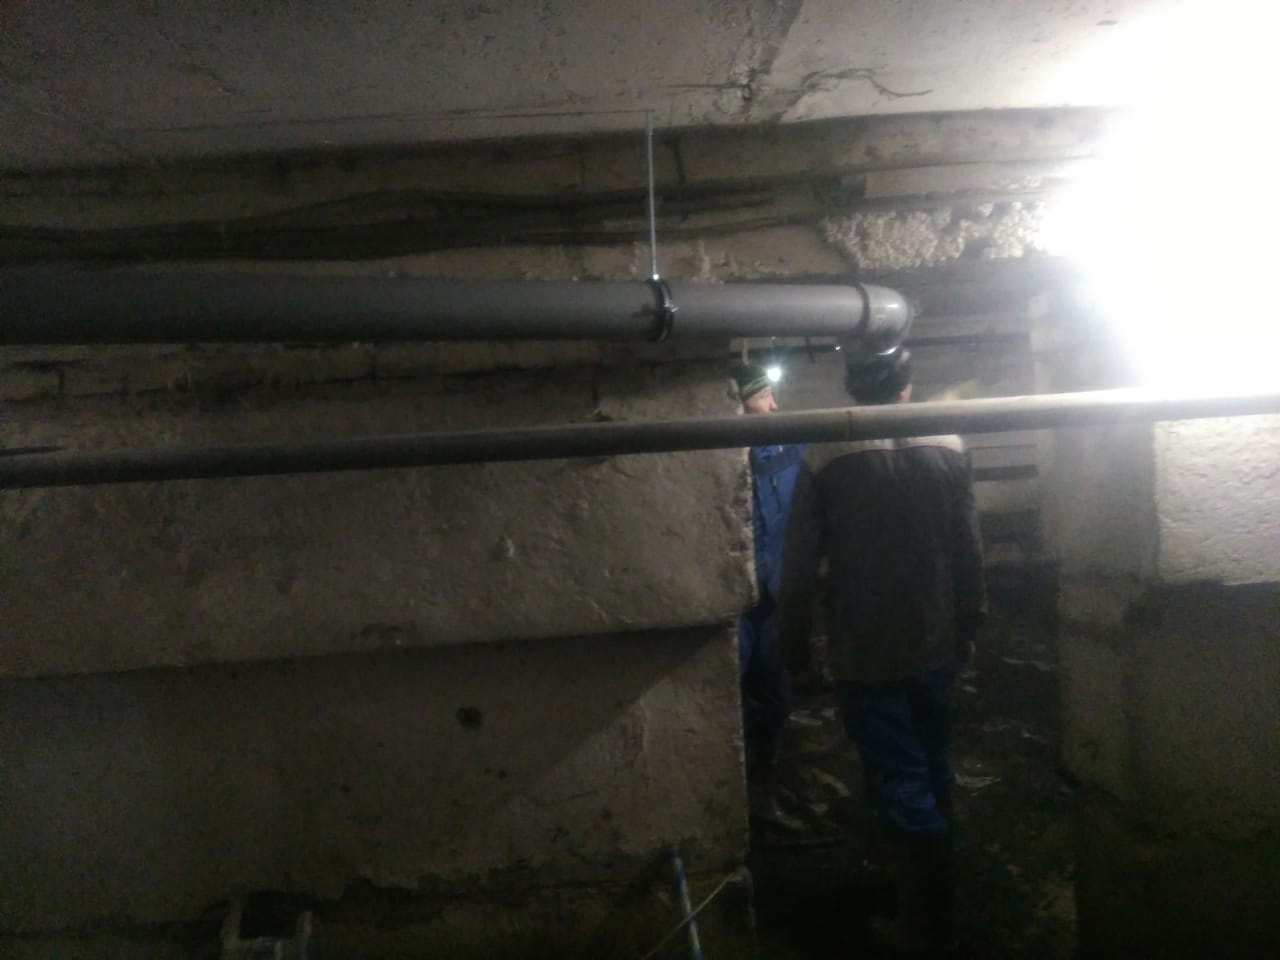 УК "ЖКХ Новые Люди" выполнили работы по замене лежака канализации в подвальном помещении, а также замена выпуска канализации из ...